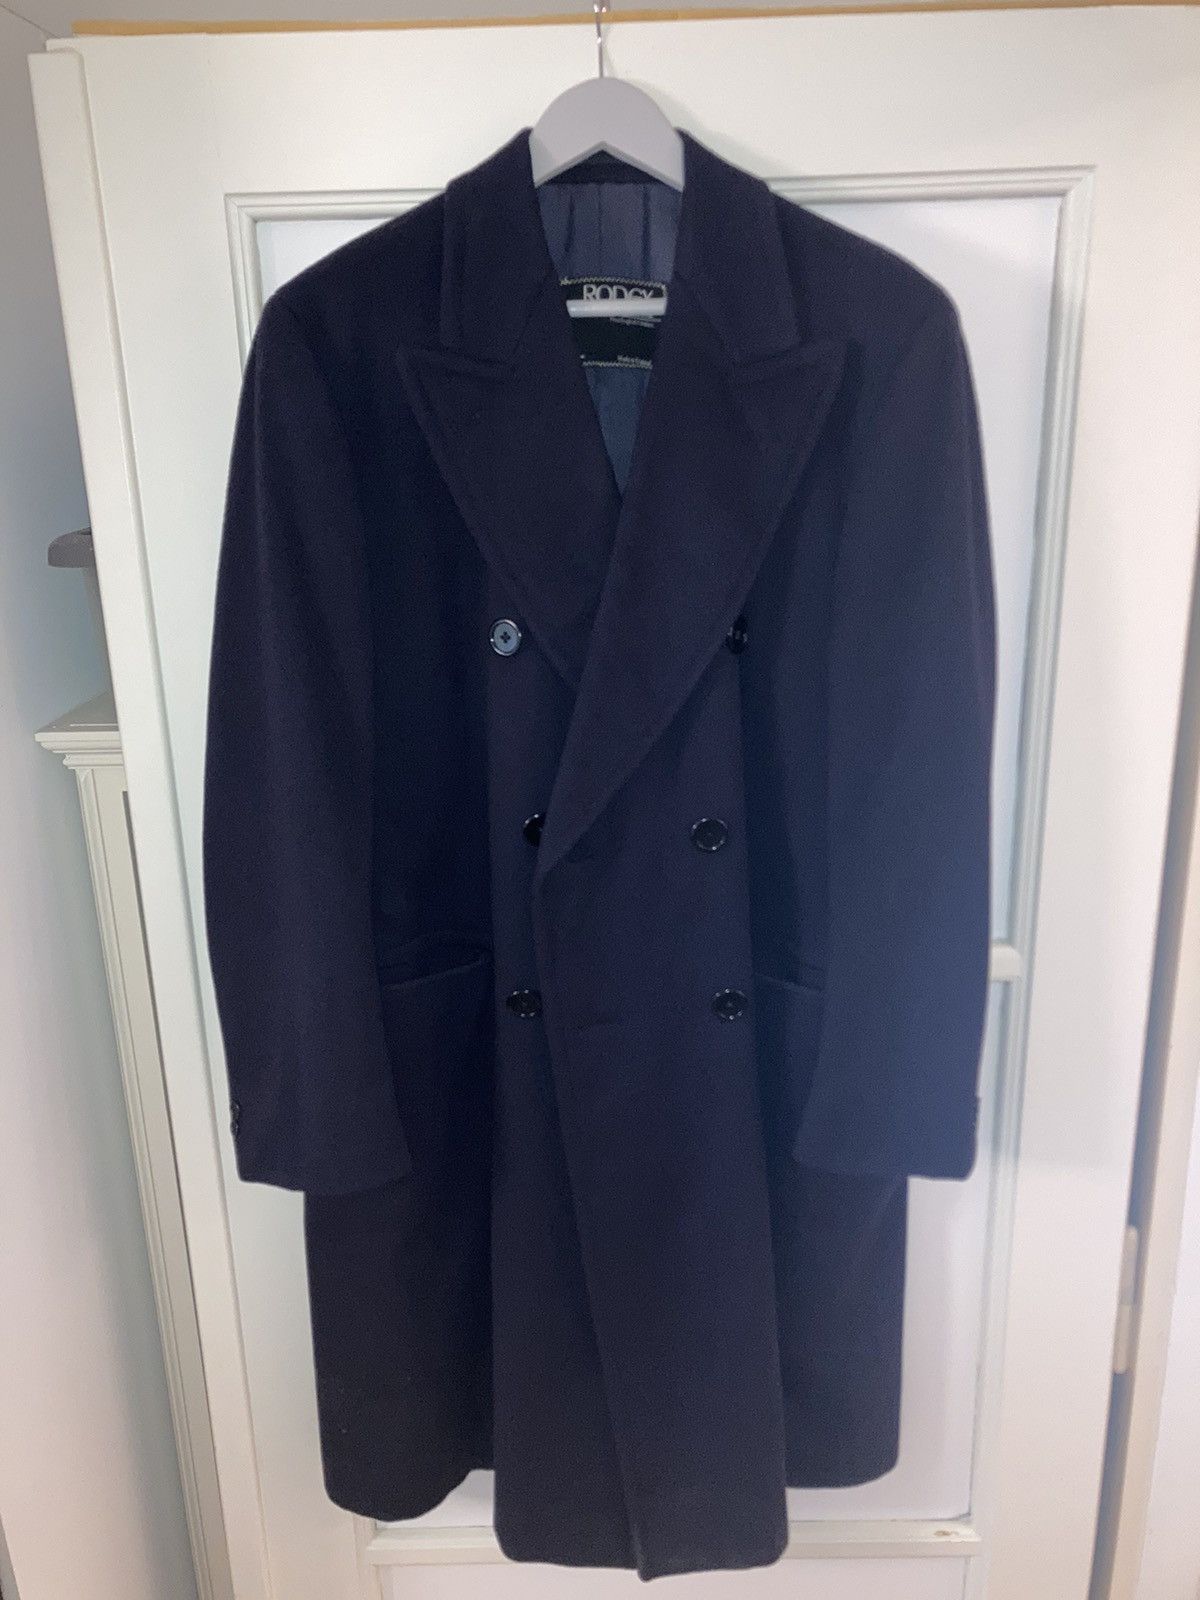 Rodex 100% cashmere dark blue coat | Grailed